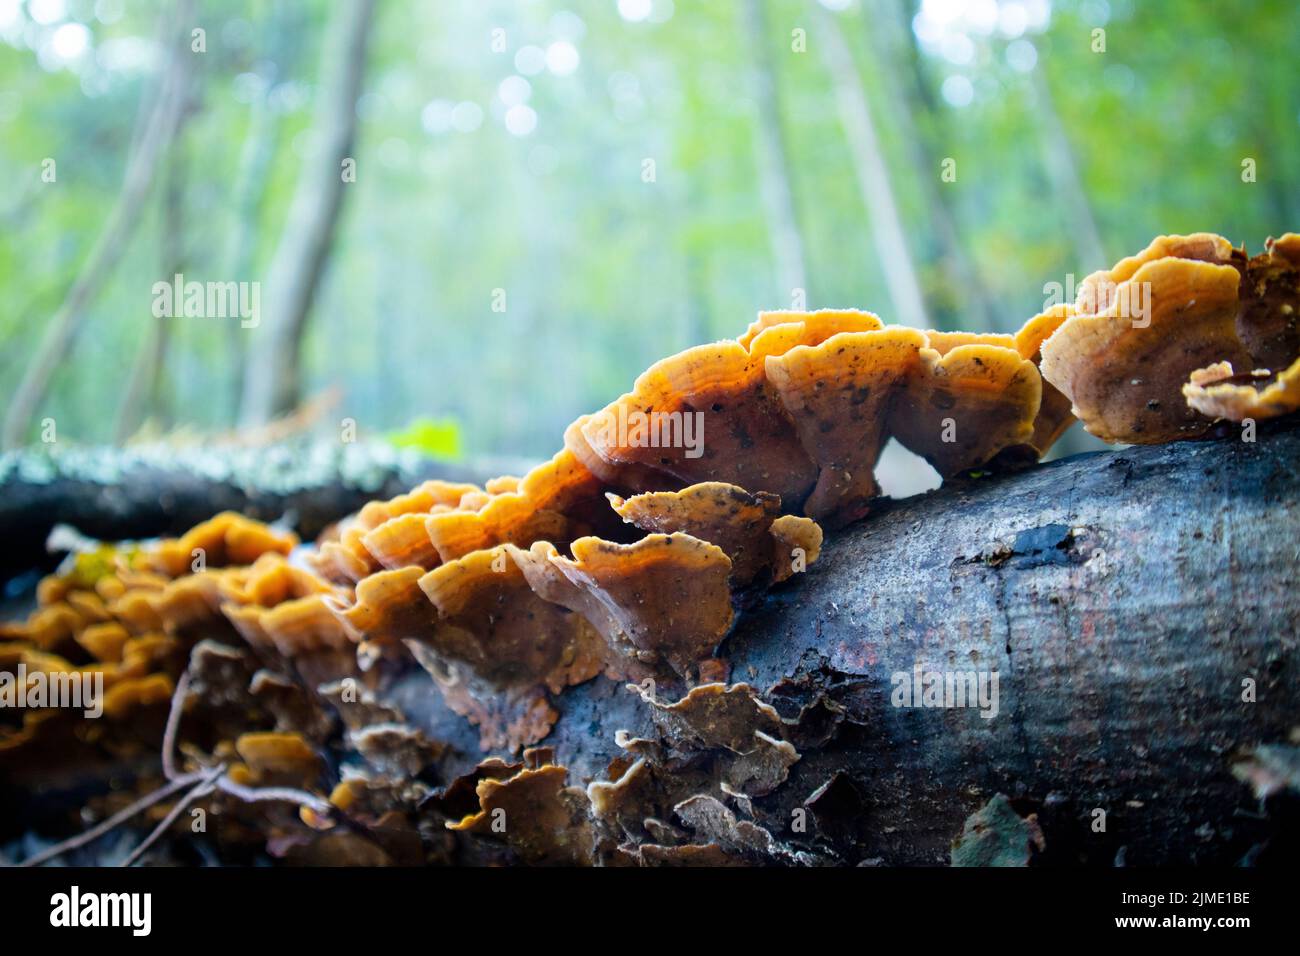 Variety of Inonotus mushroom Stock Photo